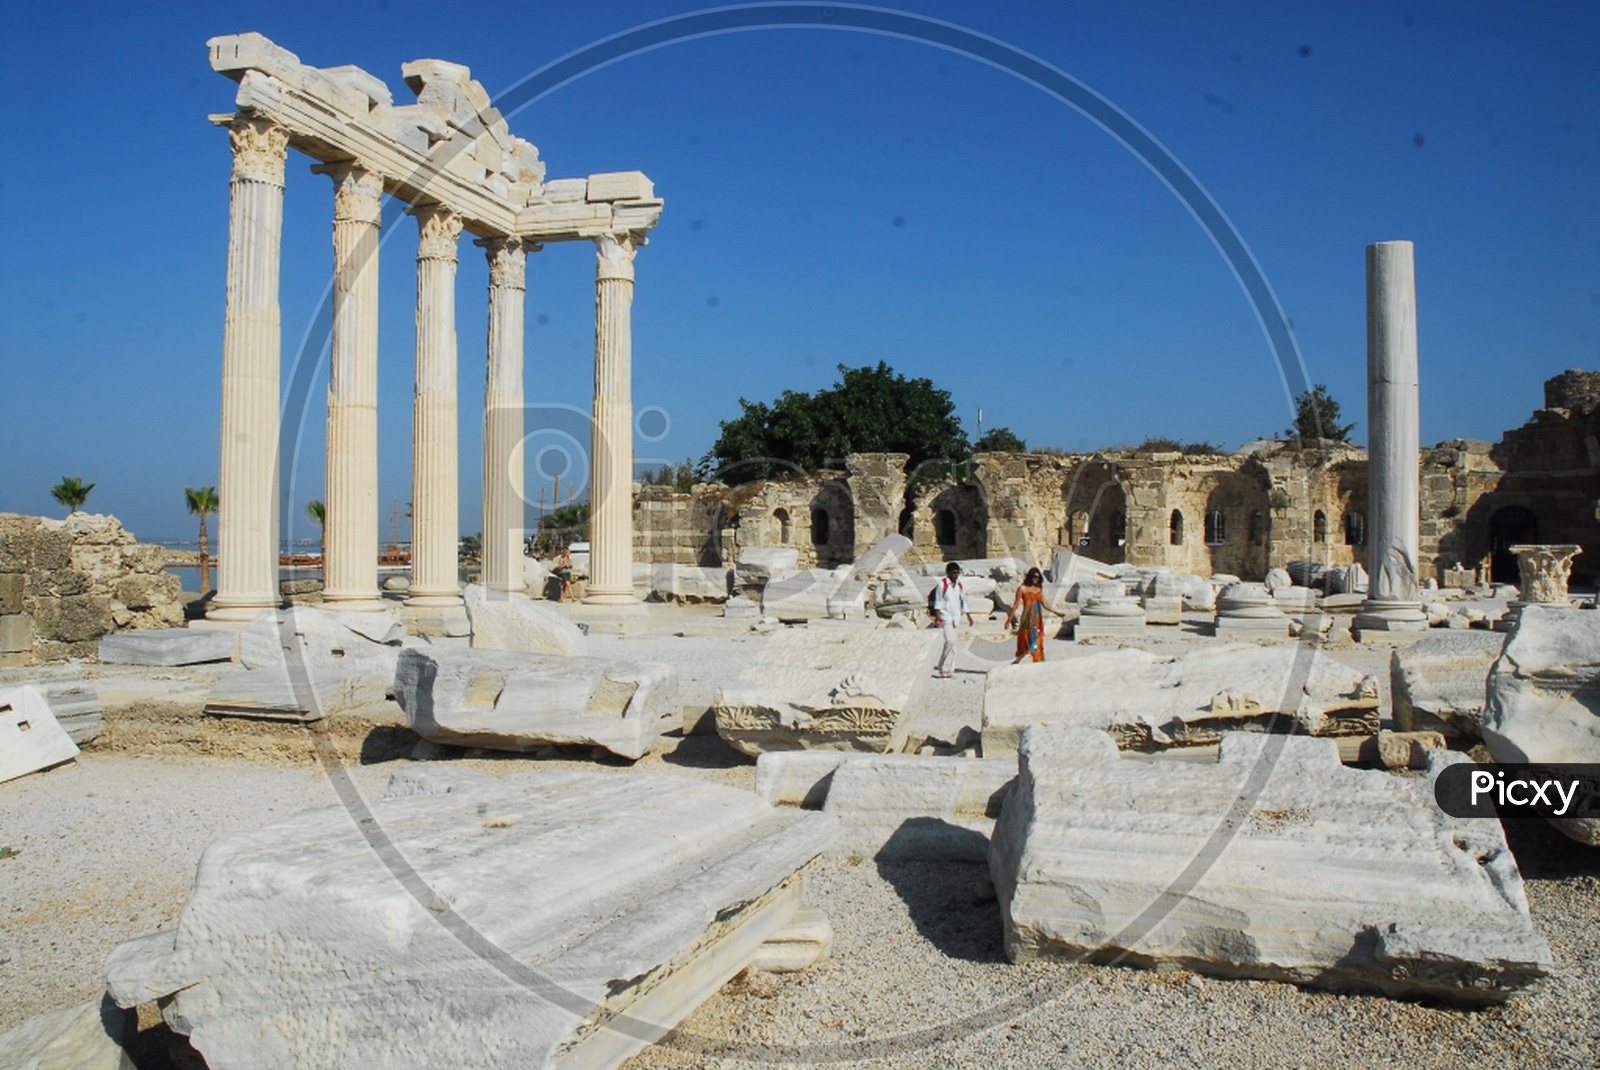 Apollo temple ruins in Turkey